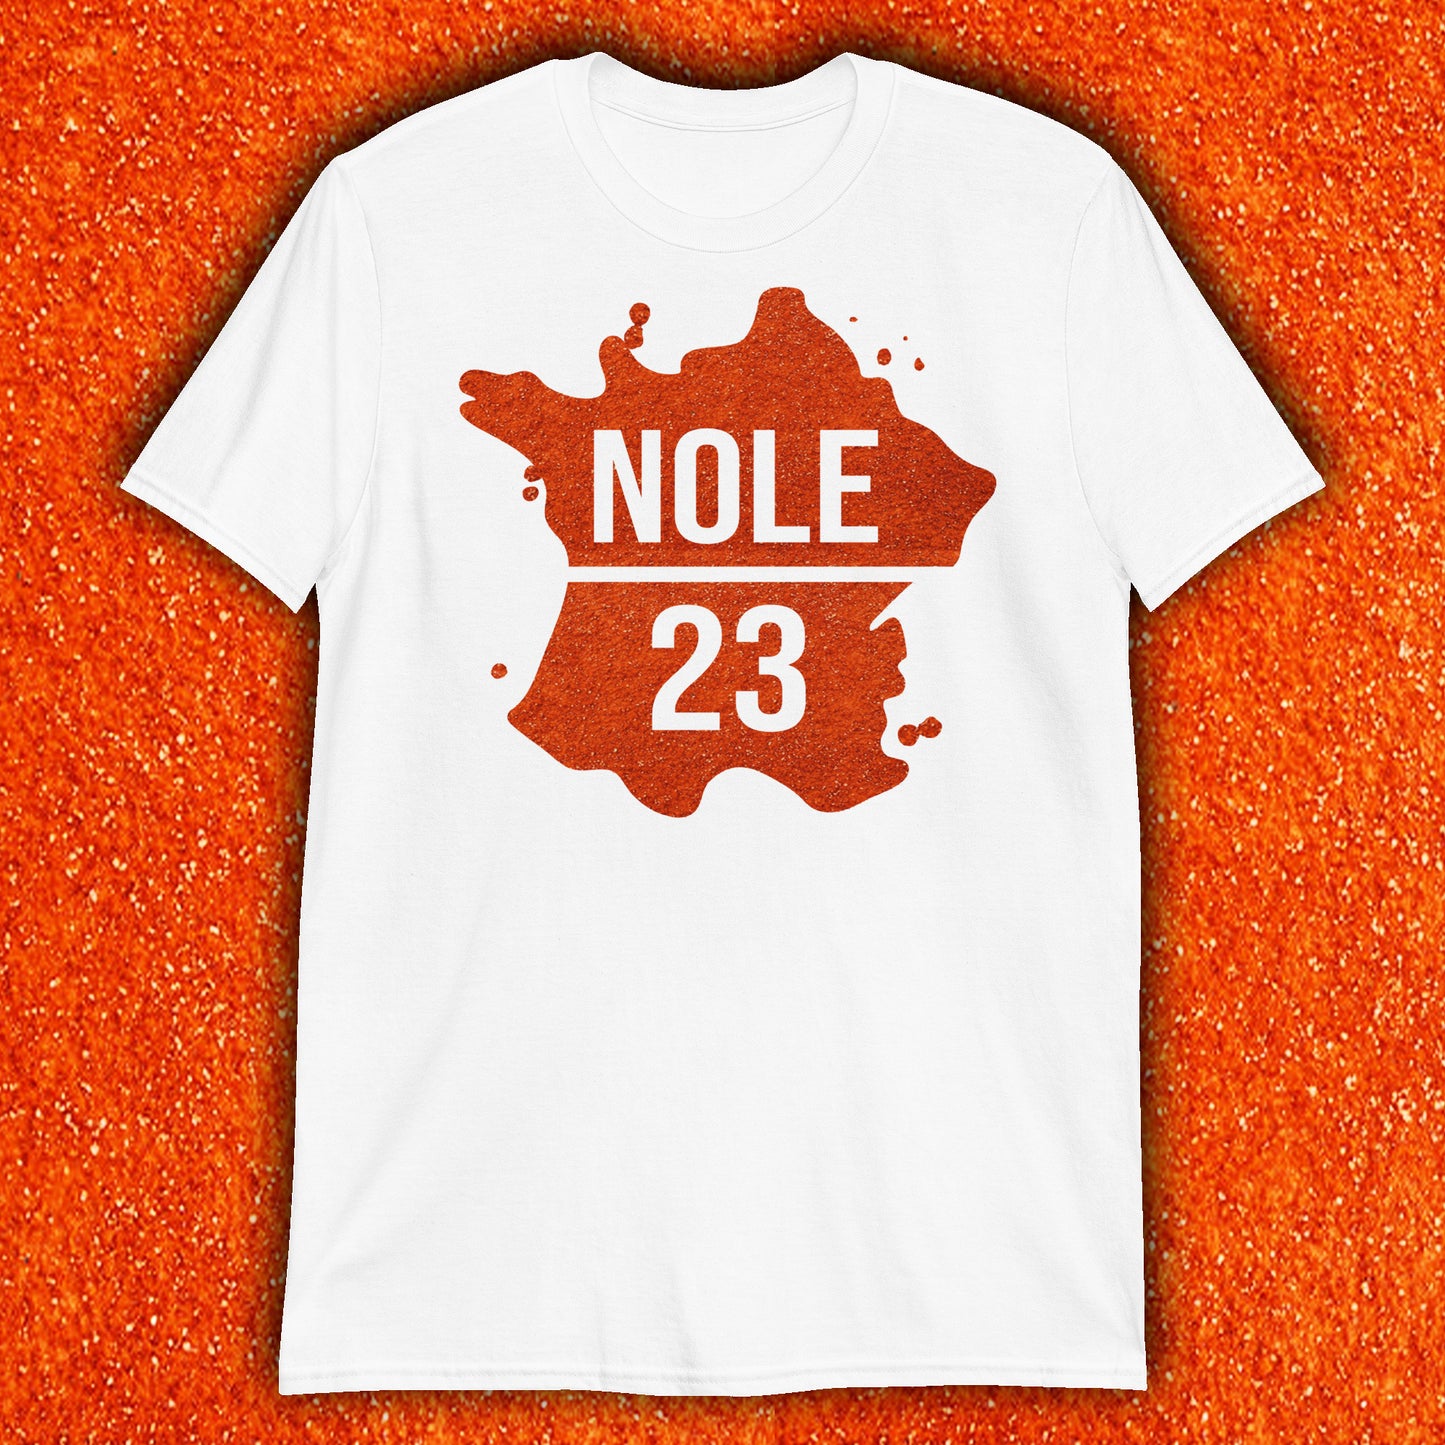 NOLE 23 Slams T-Shirt